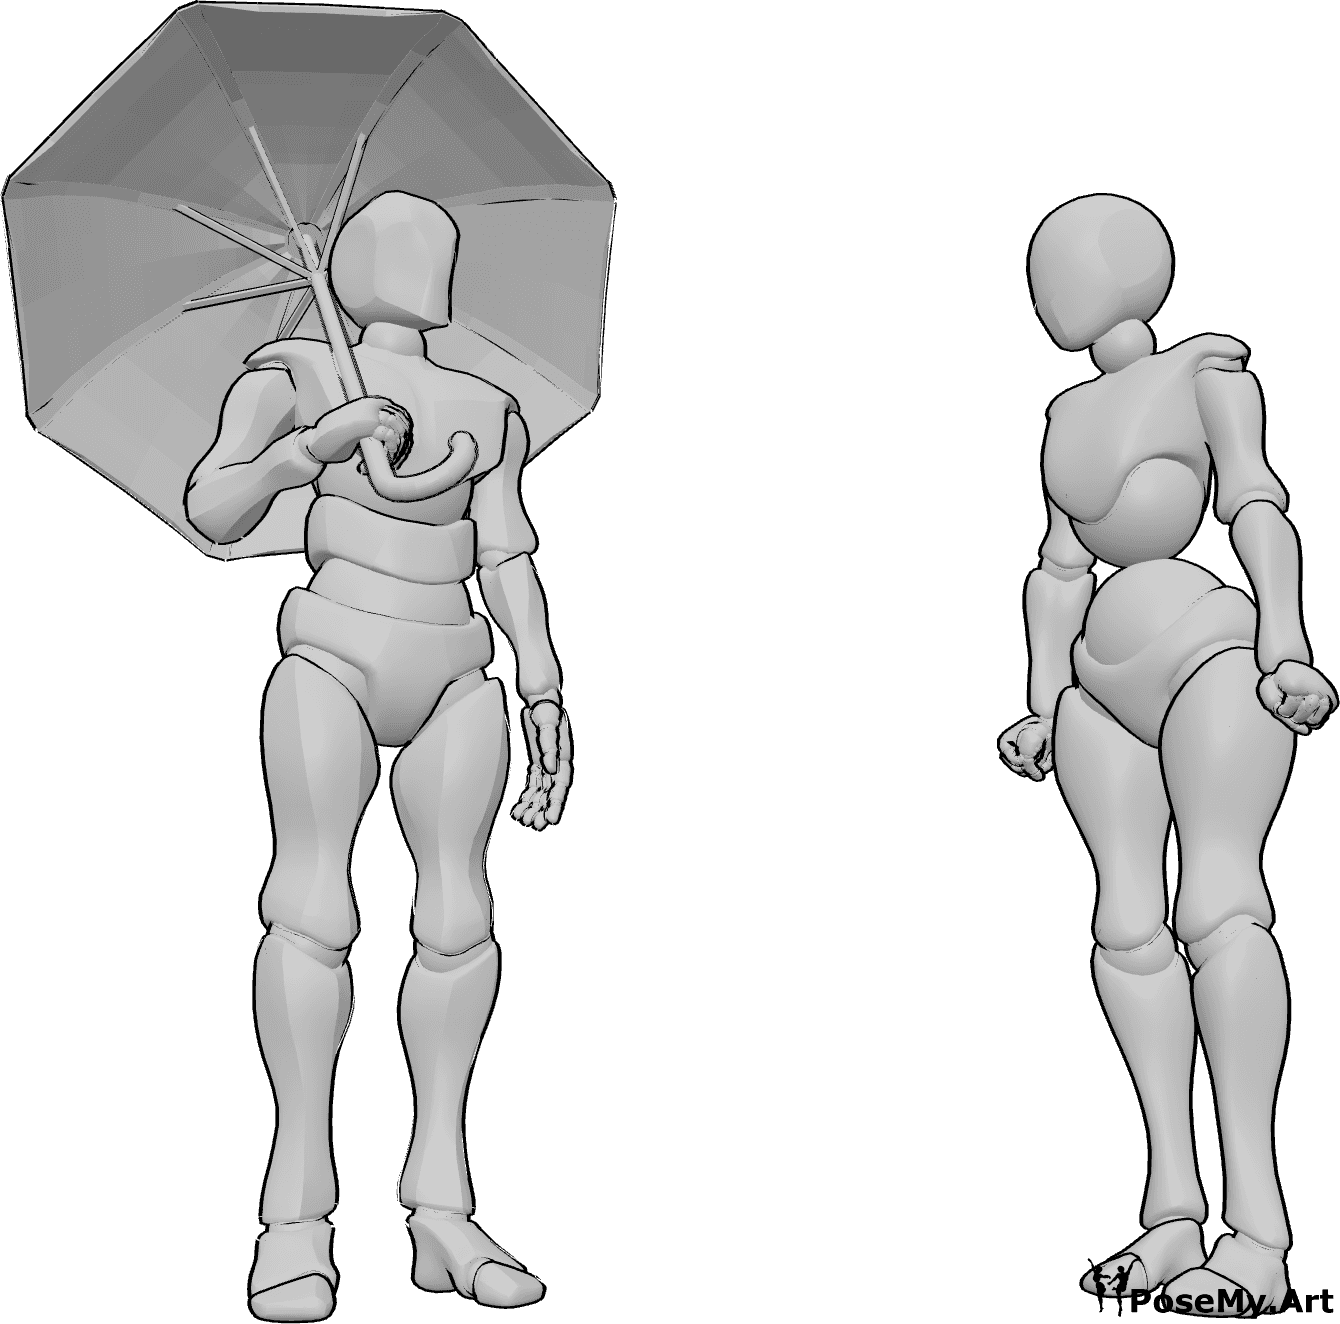 Référence des poses- Femme sans parapluie - L'homme tient un parapluie et regarde la femme qui est en colère.